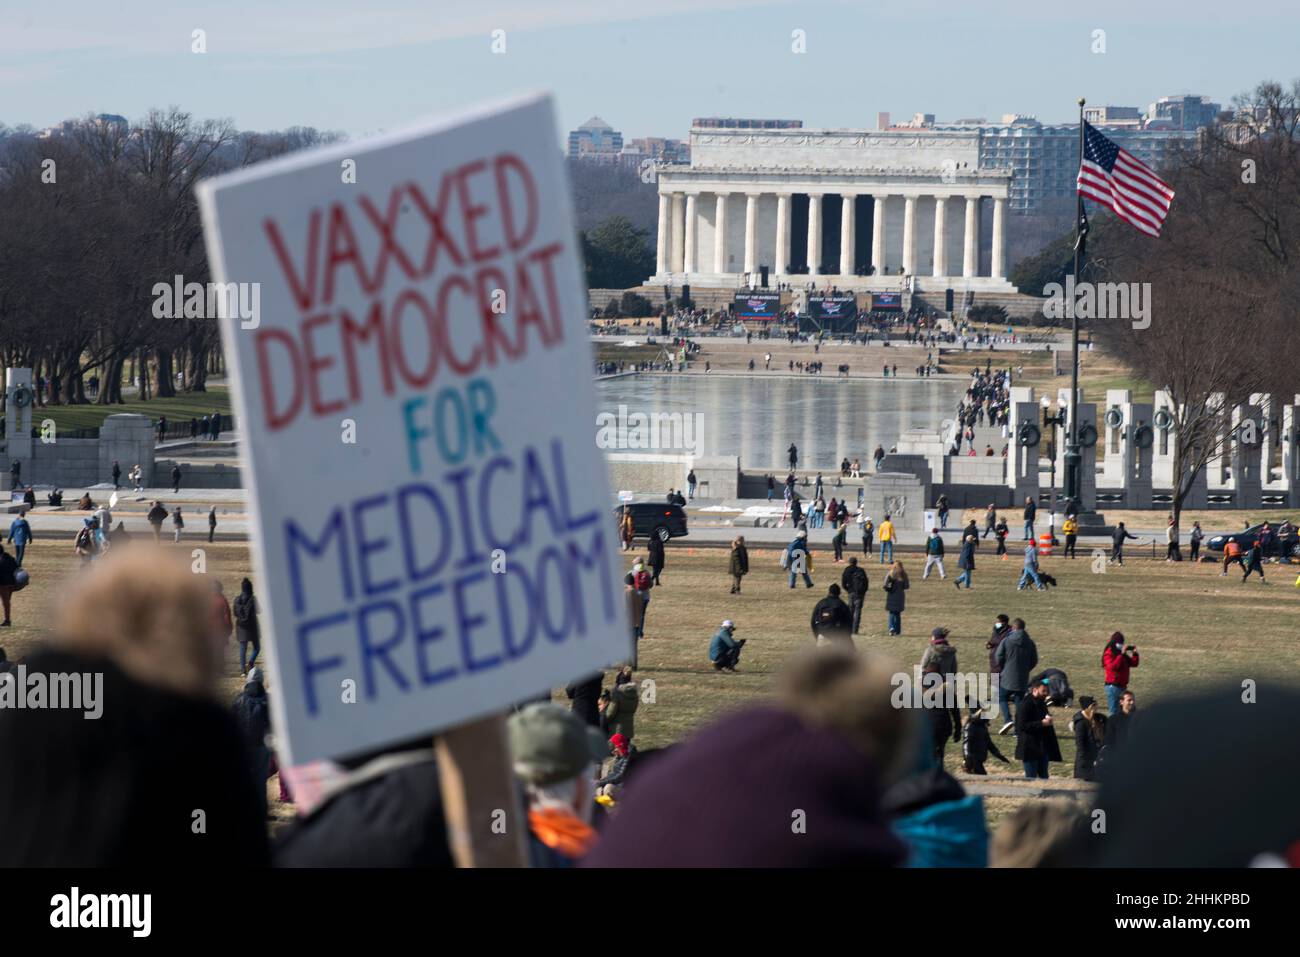 Vaxed Demokrat für medizinische Freiheit bei der Niederlage der Mandate marschieren am 23. Januar 2022 in Richtung des Lincoln Memorial Reflective Pools in Washington, DC. Stockfoto